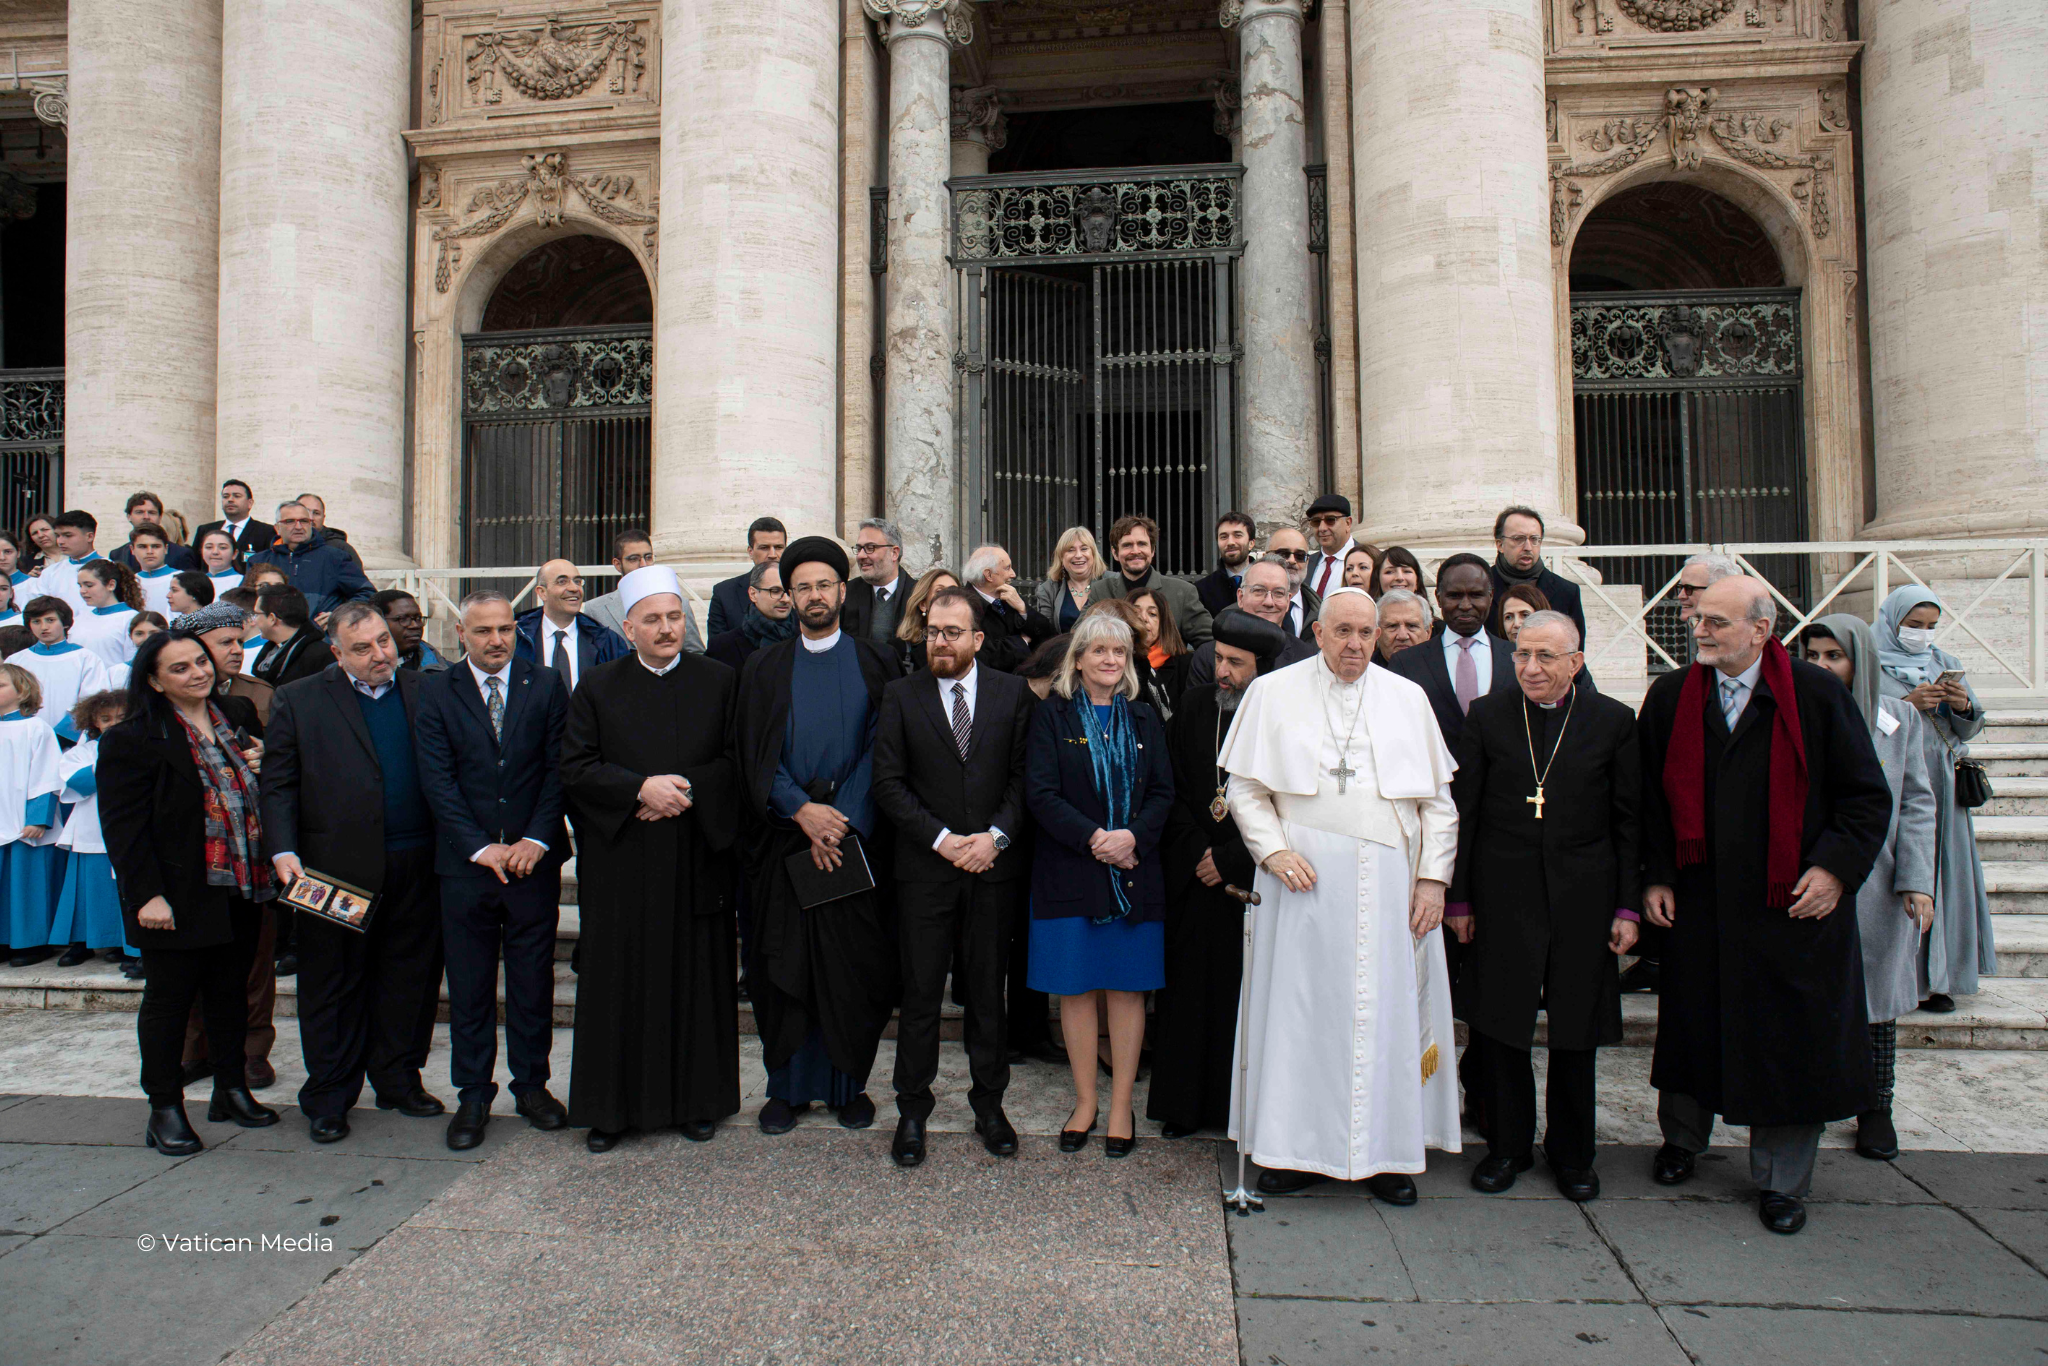 Group shot at Vatican